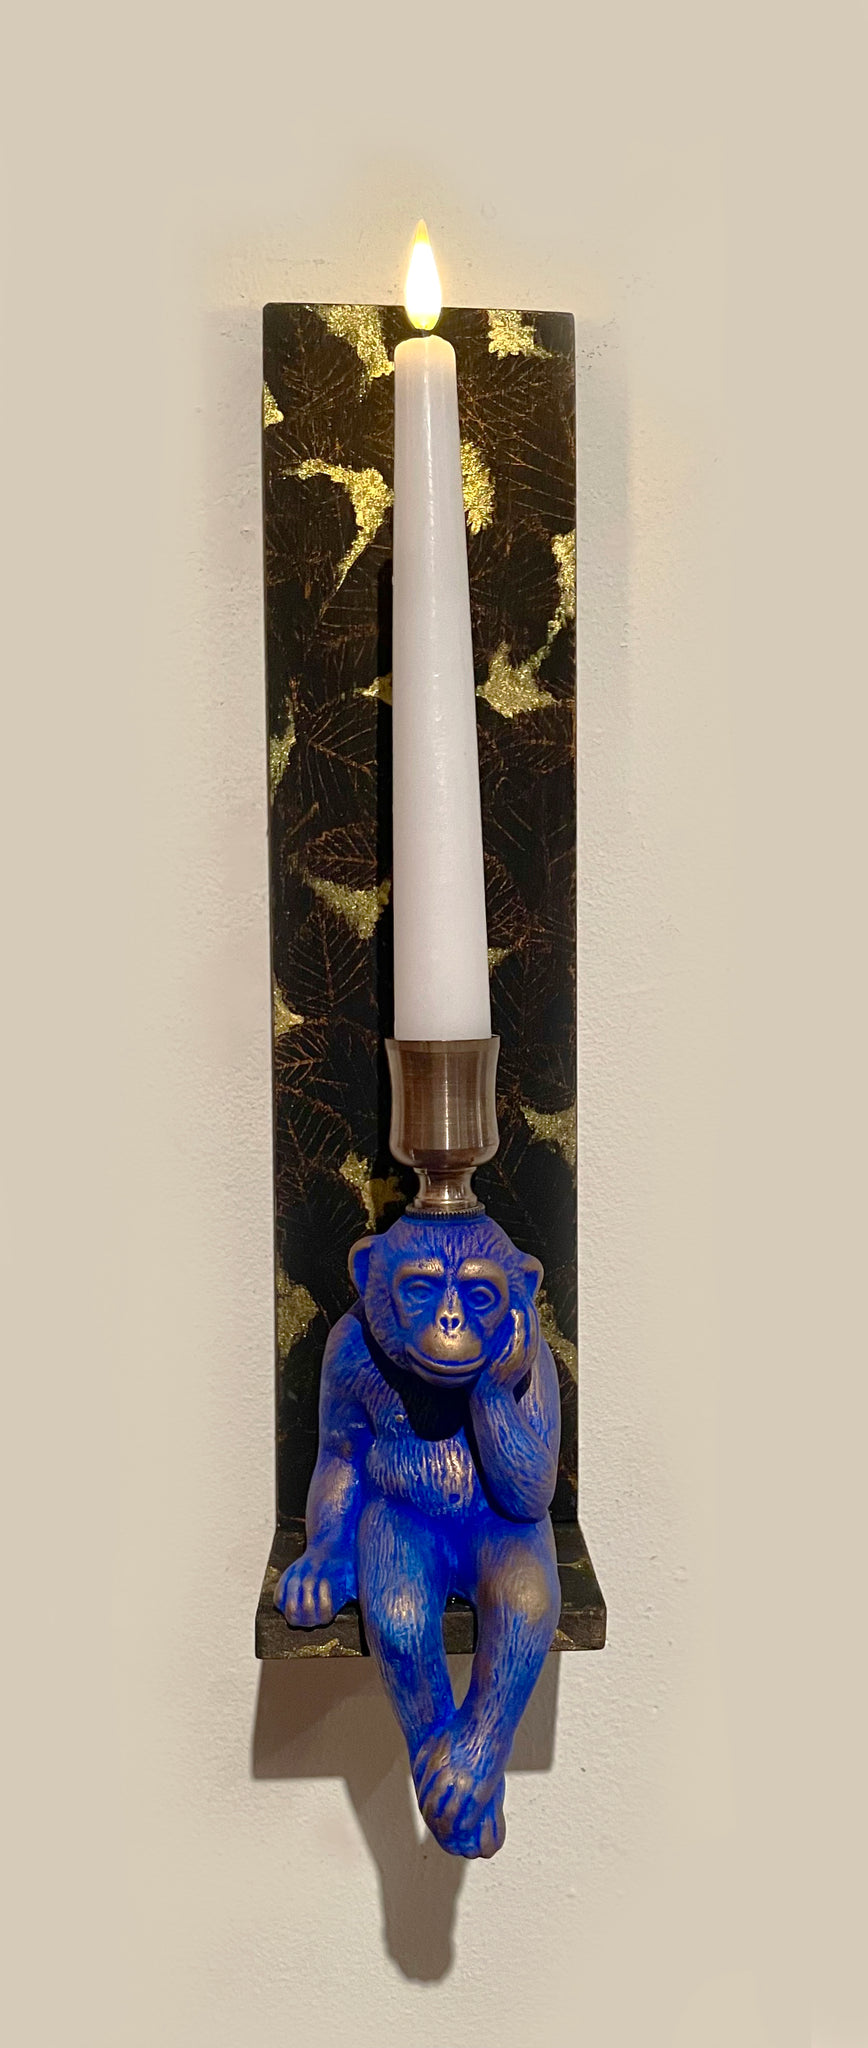 monkey candle sconce - blue